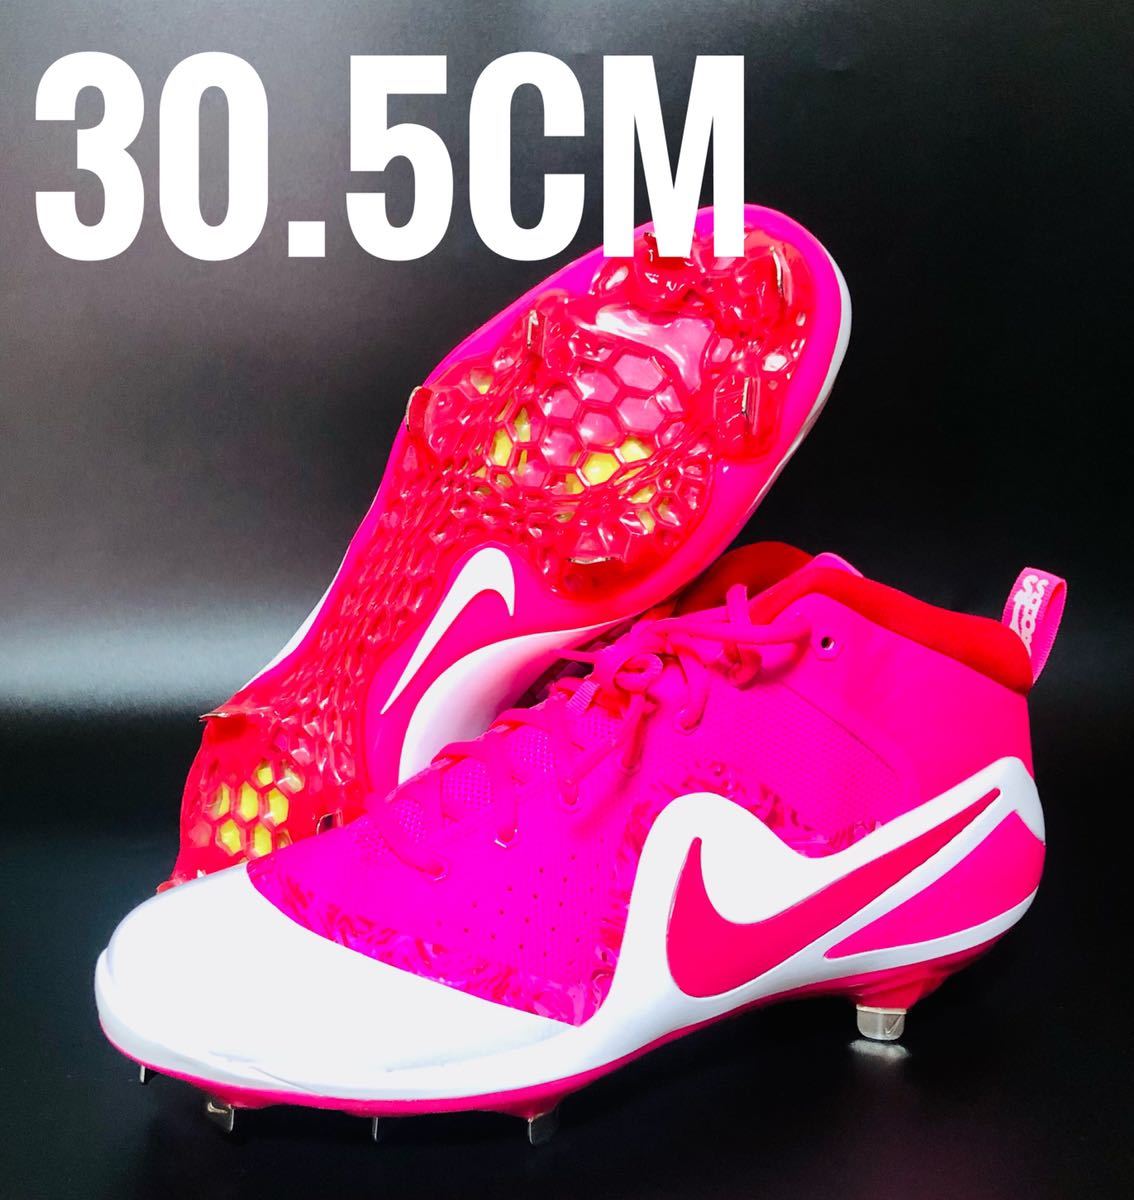 【新作入荷!!】  Nike 【USA限定】ナイキ 野球 軟式【新品未使用】【返金保証】 硬式 30.5cm ピンク 4 Trout Zoom Force プロ トラウト メンズ スパイク 29.0cm以上